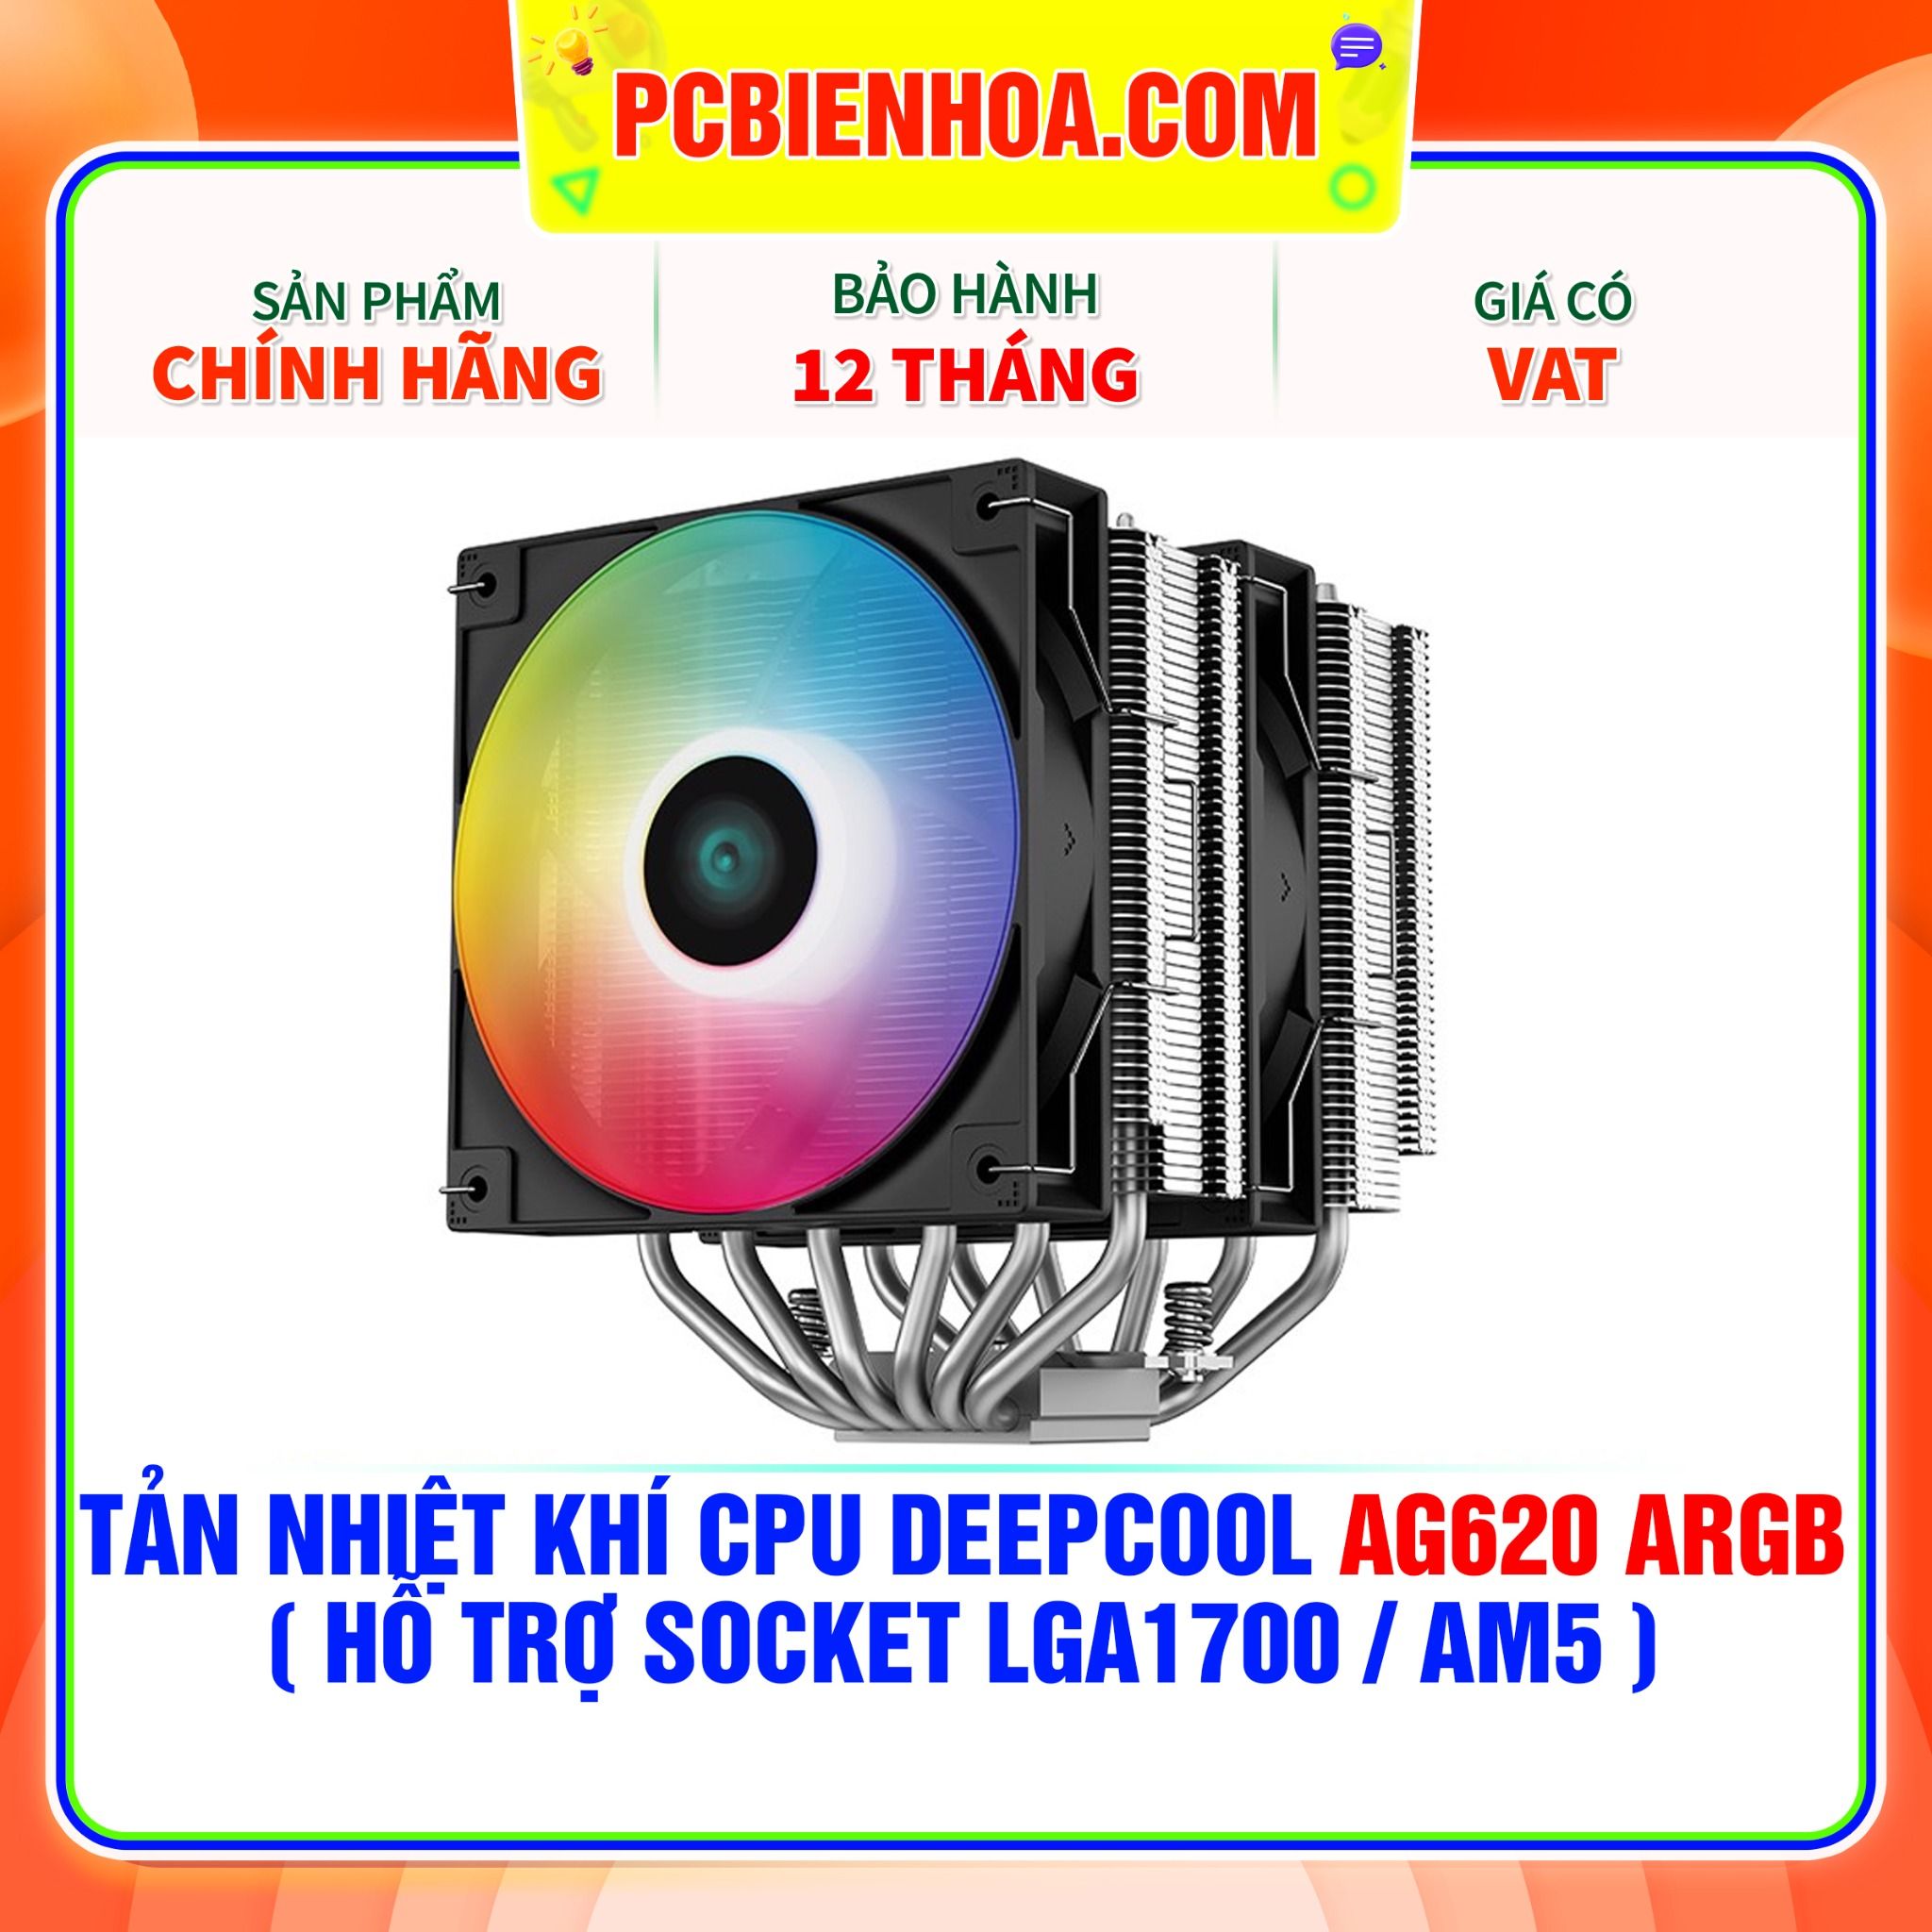  TẢN NHIỆT KHÍ CPU DEEPCOOL AG620 ARGB ( HỖ TRỢ SOCKET LGA1700 / AM5 ) 